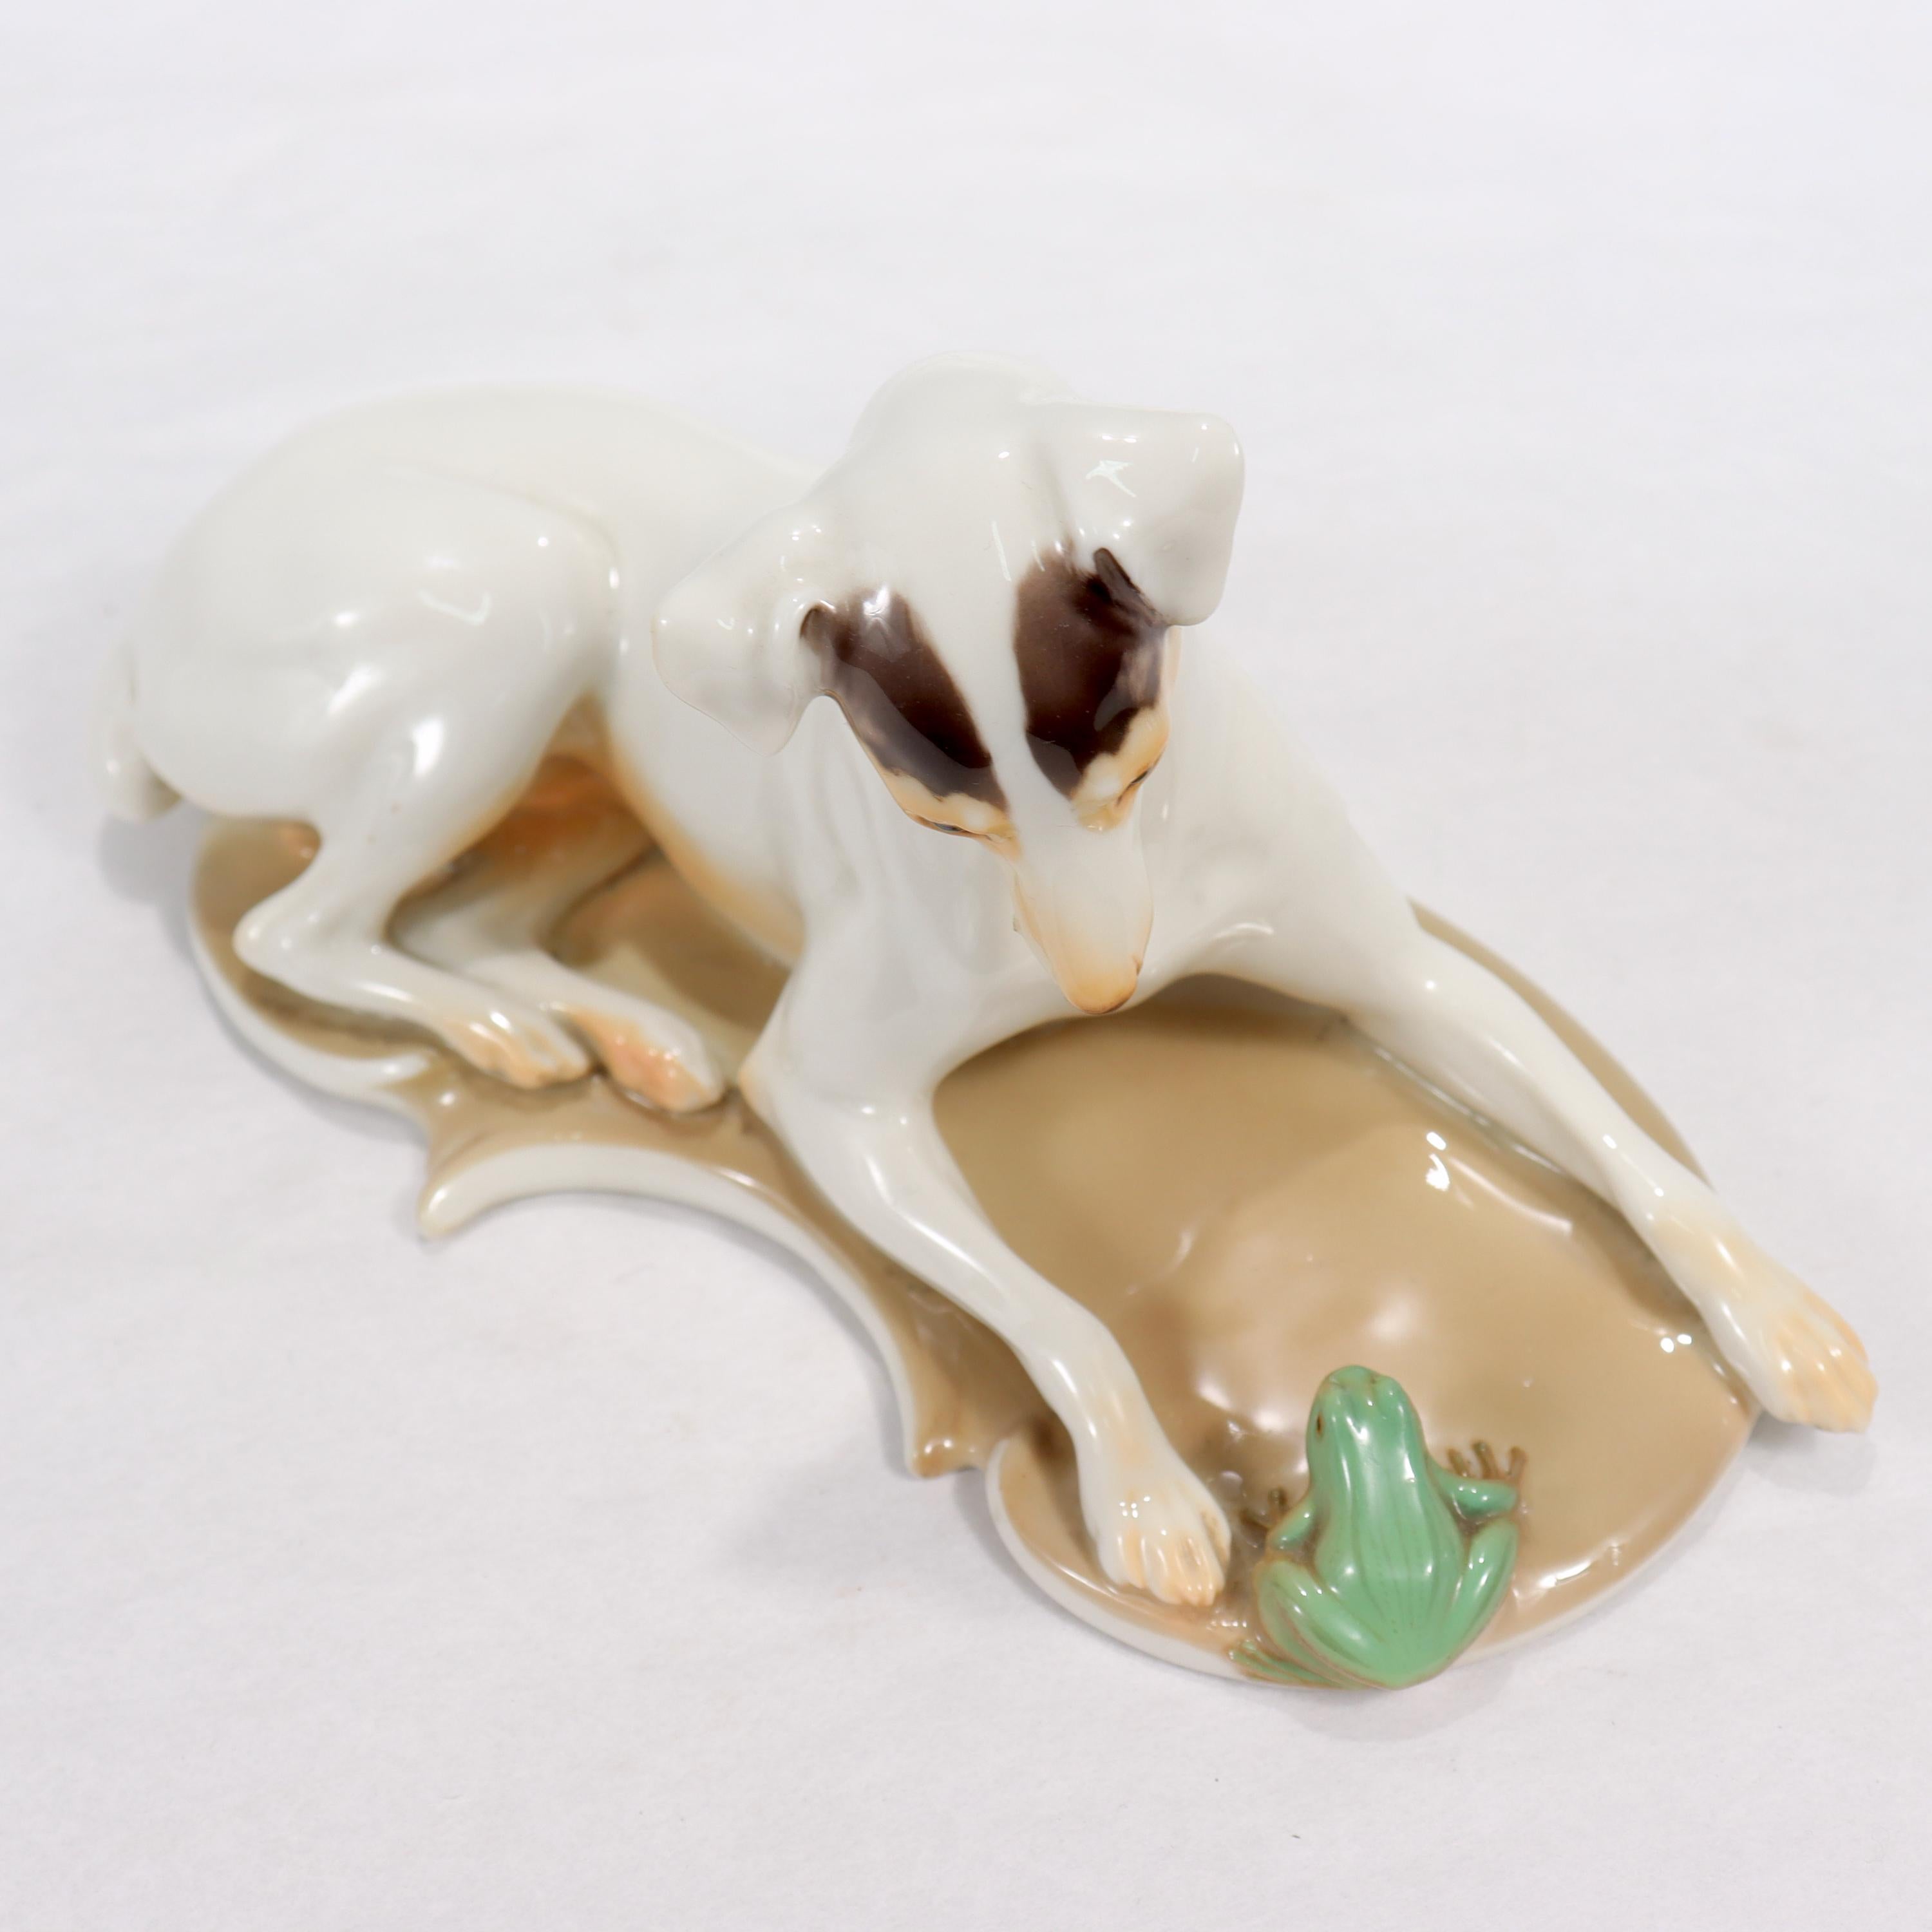 Antique Nymphenburg Porcelain Terrier Dog & Frog Figurine by T. Karner 1